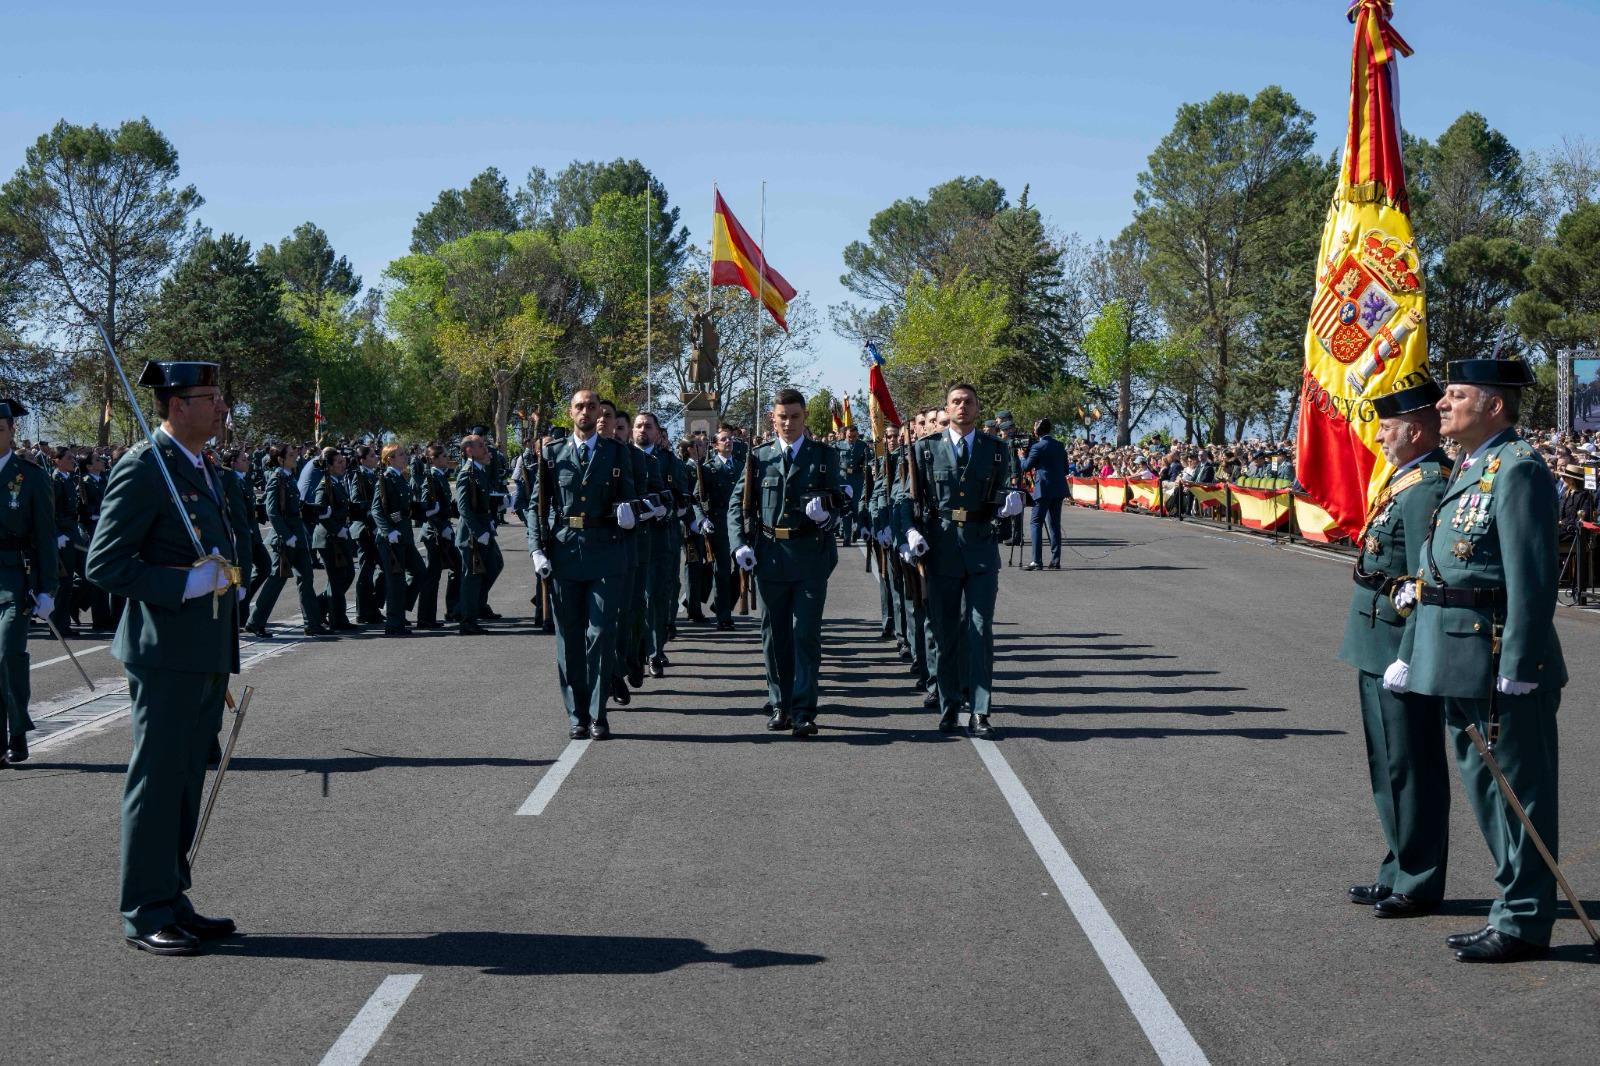 S.M. el Rey preside la jura de bandera en la Academia de la Guardia Civil de Baeza (Jaén)